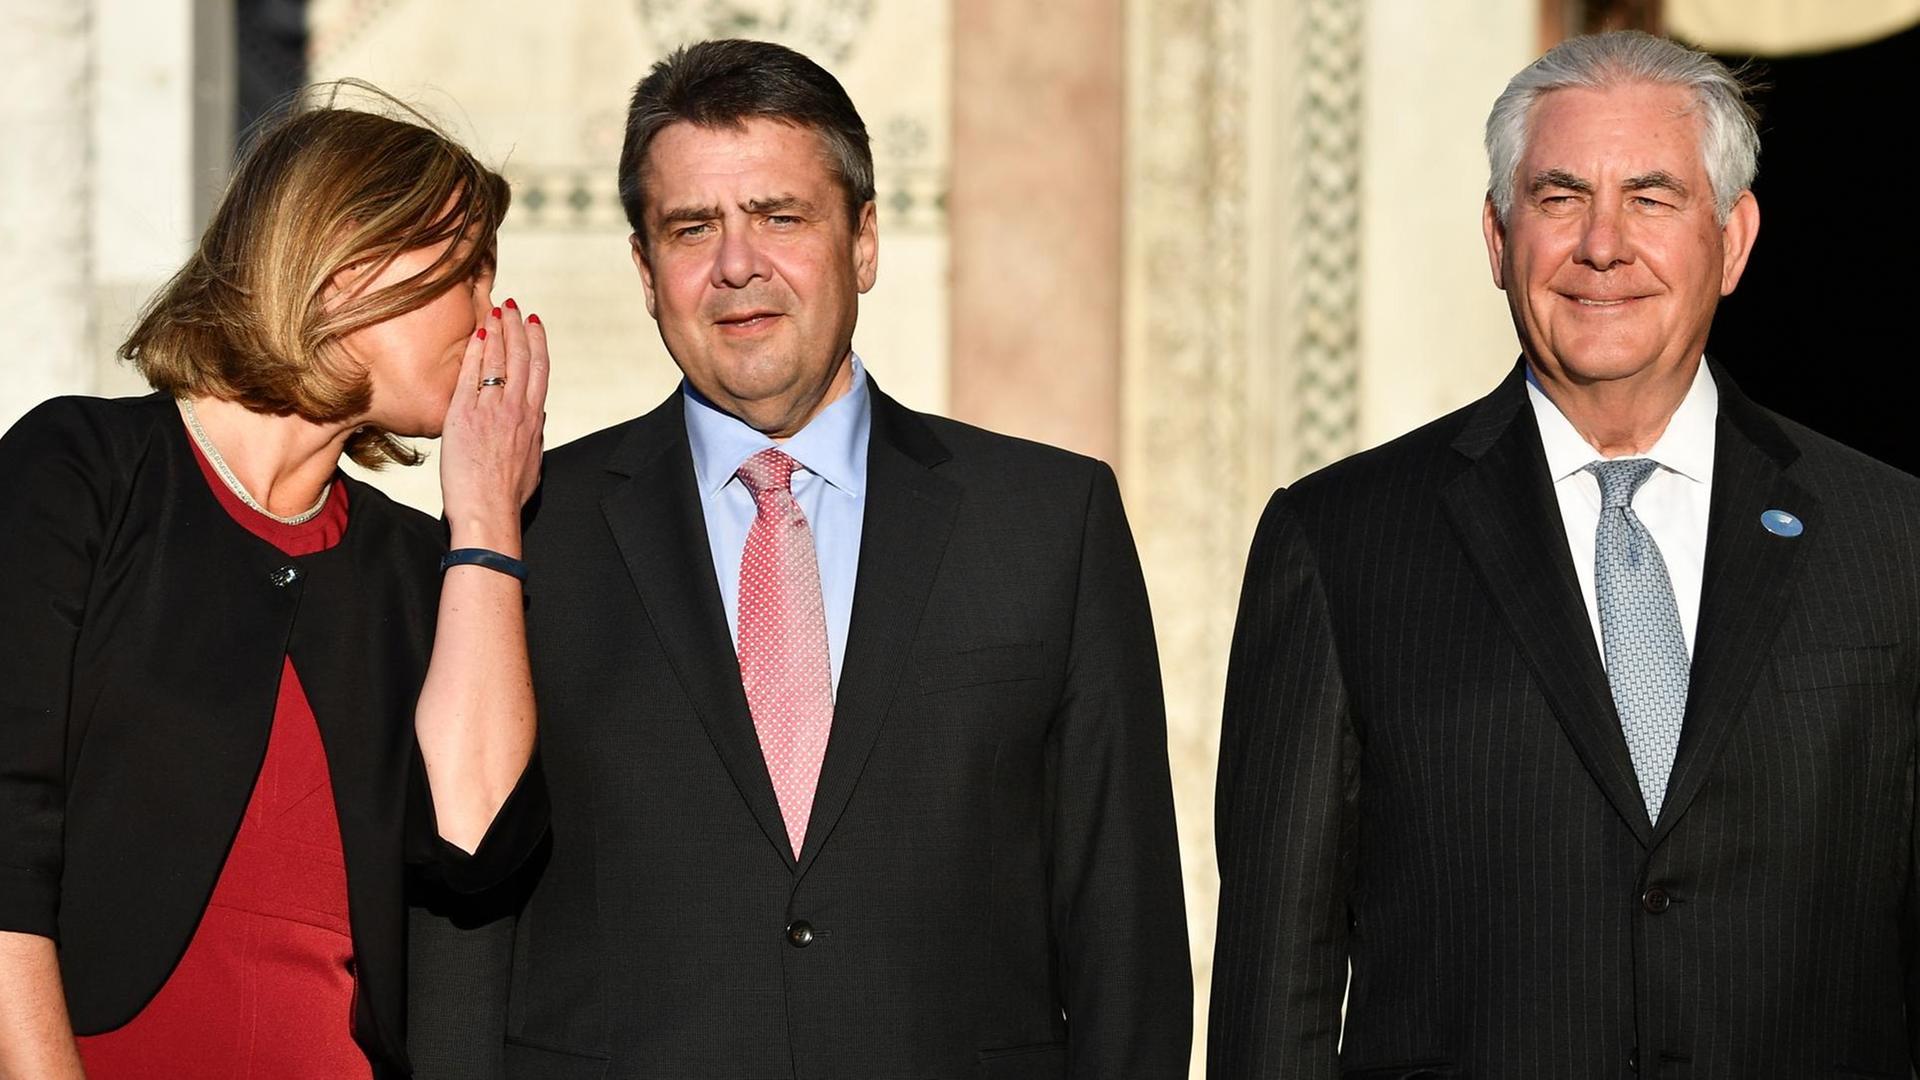 Die EU-Außenbeauftragte Federica Mogherini (links), der deutsche Bundesaußenminister Sigmar Gabriel (mitte) und US-Außenminister Rex Tillerson (rechts) während eines Treffens der Außenminister der G7 im italienischen Lucca.